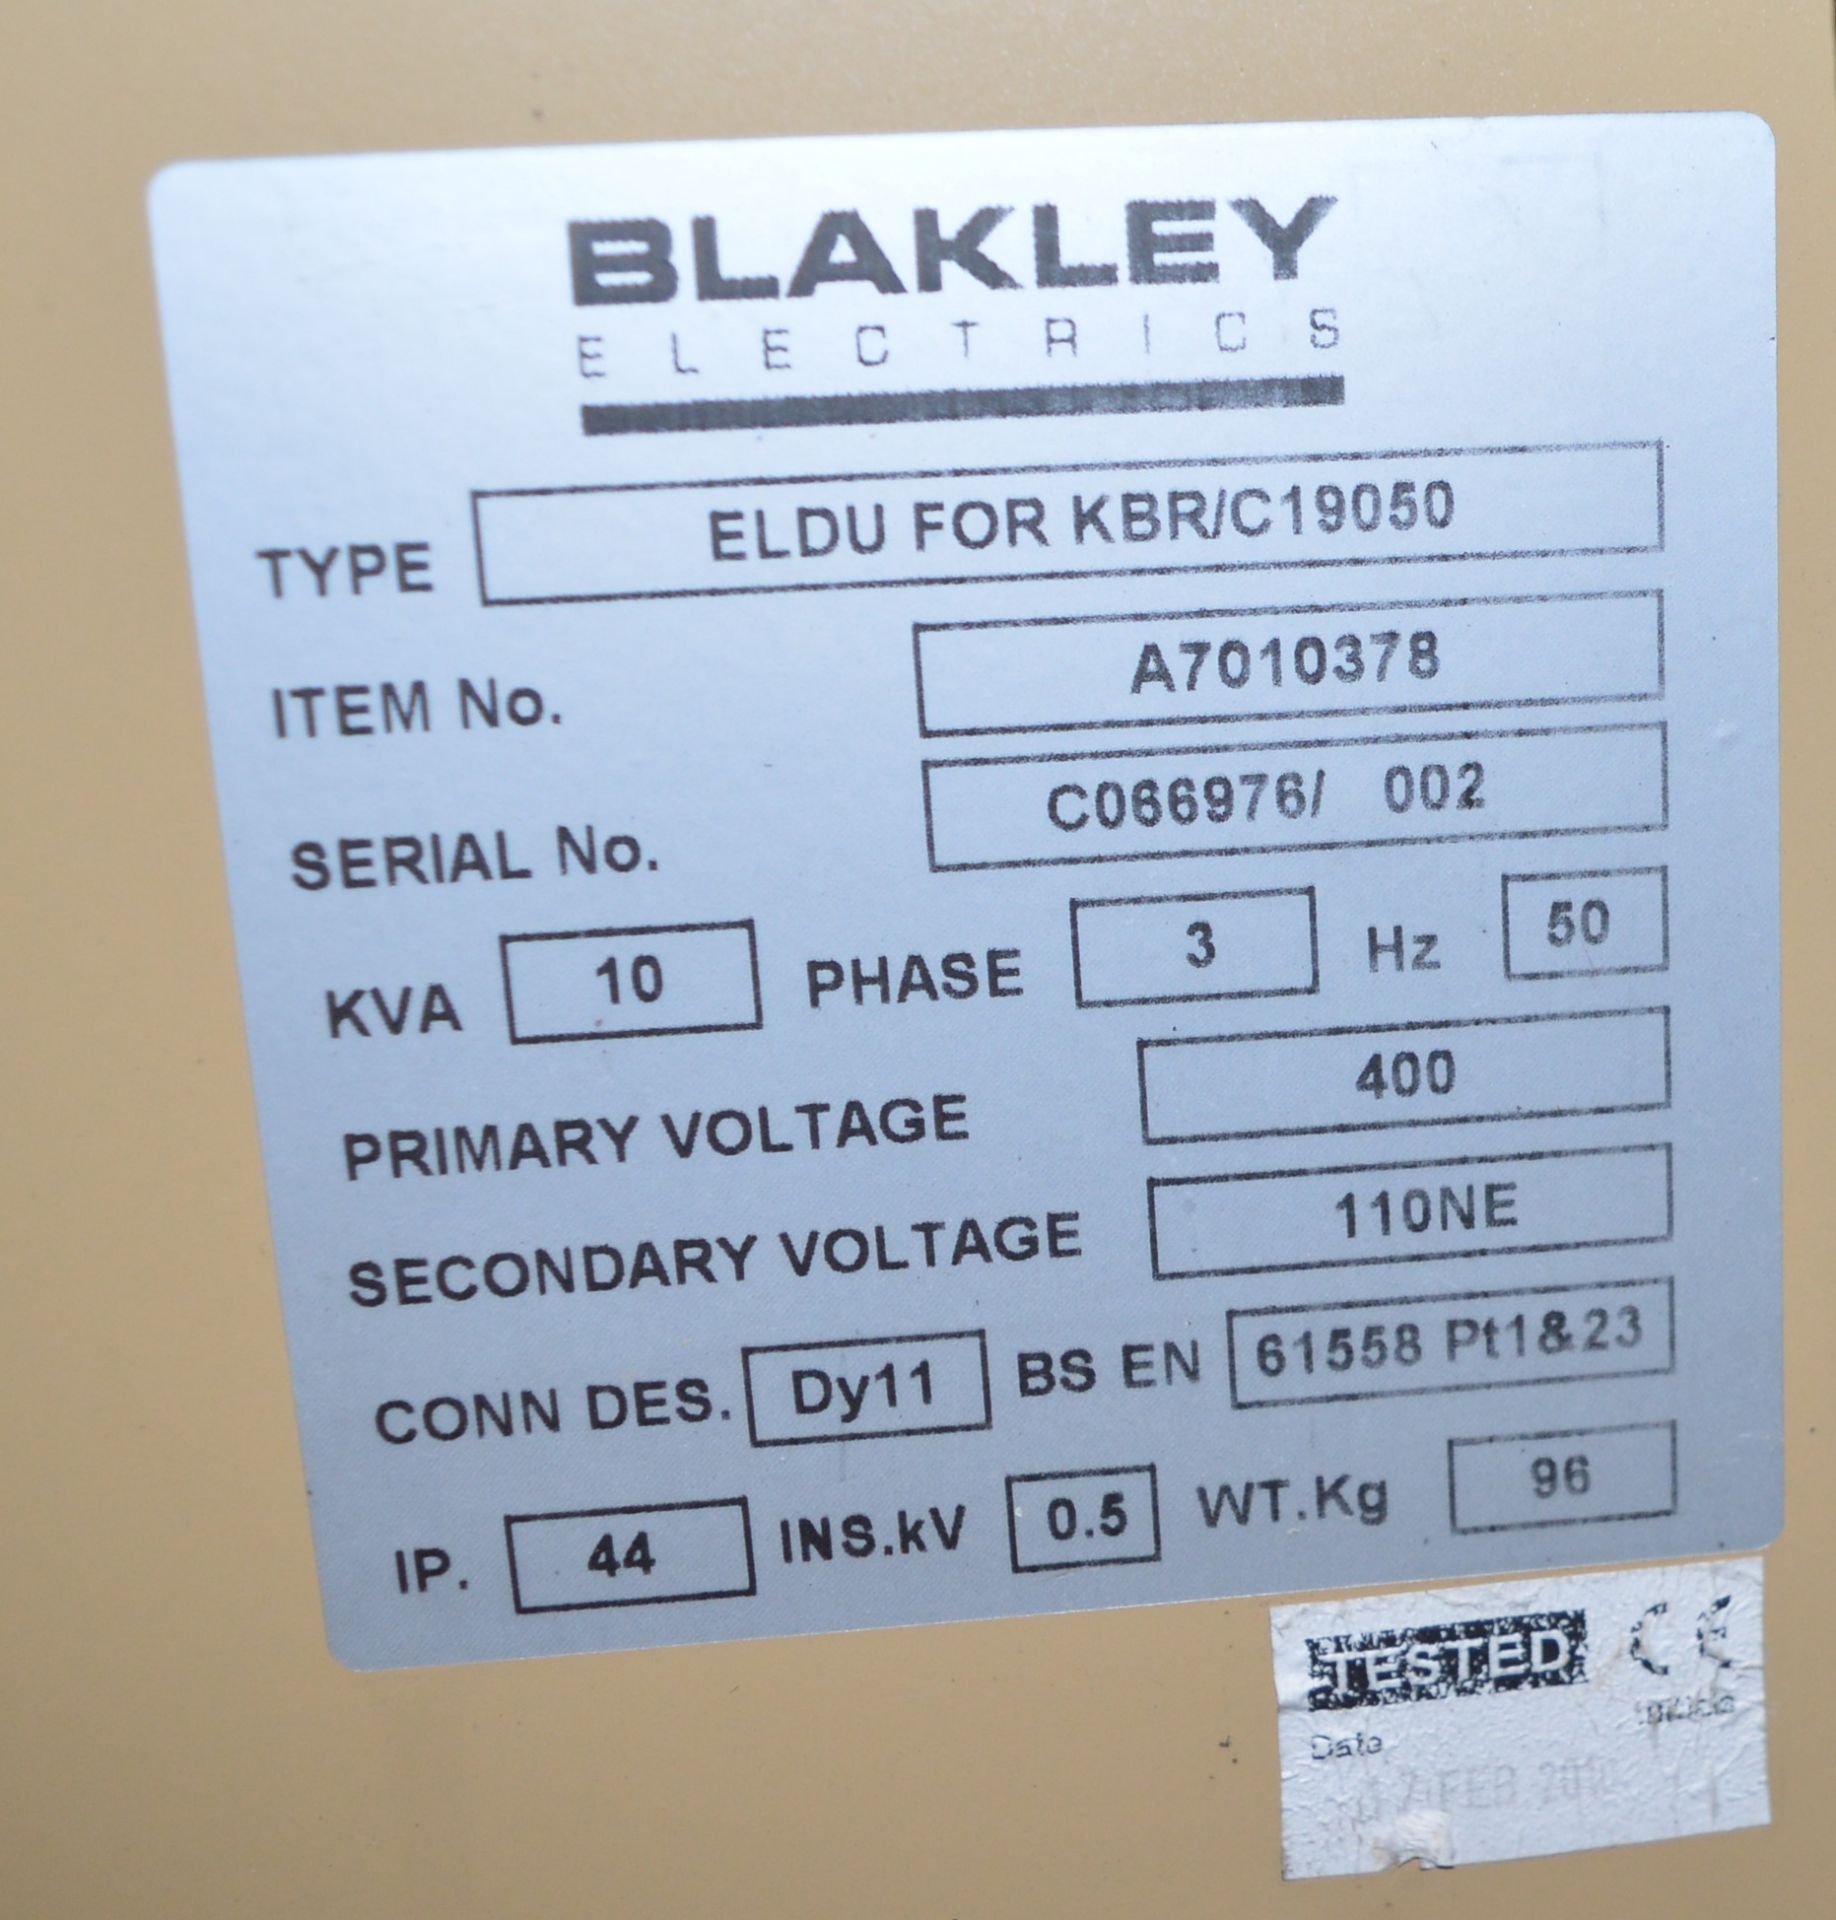 2x ELDU Power Distribution Box, 10kva 3ph 50hz 400v,Blakley. - Image 2 of 2